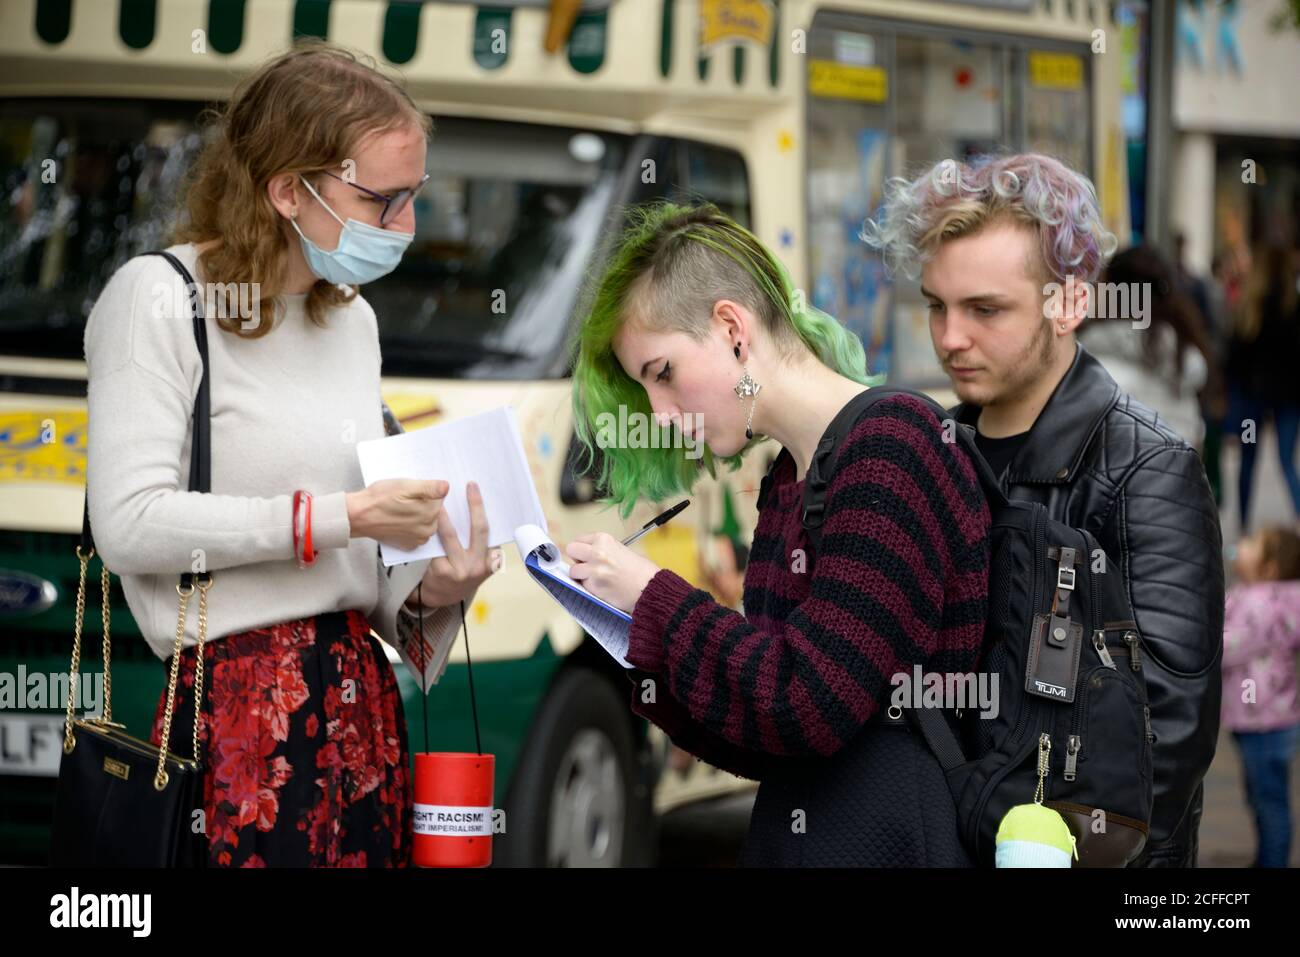 Junge Frau mit grünem Haar, die eine Petition unterschreibt Stockfoto